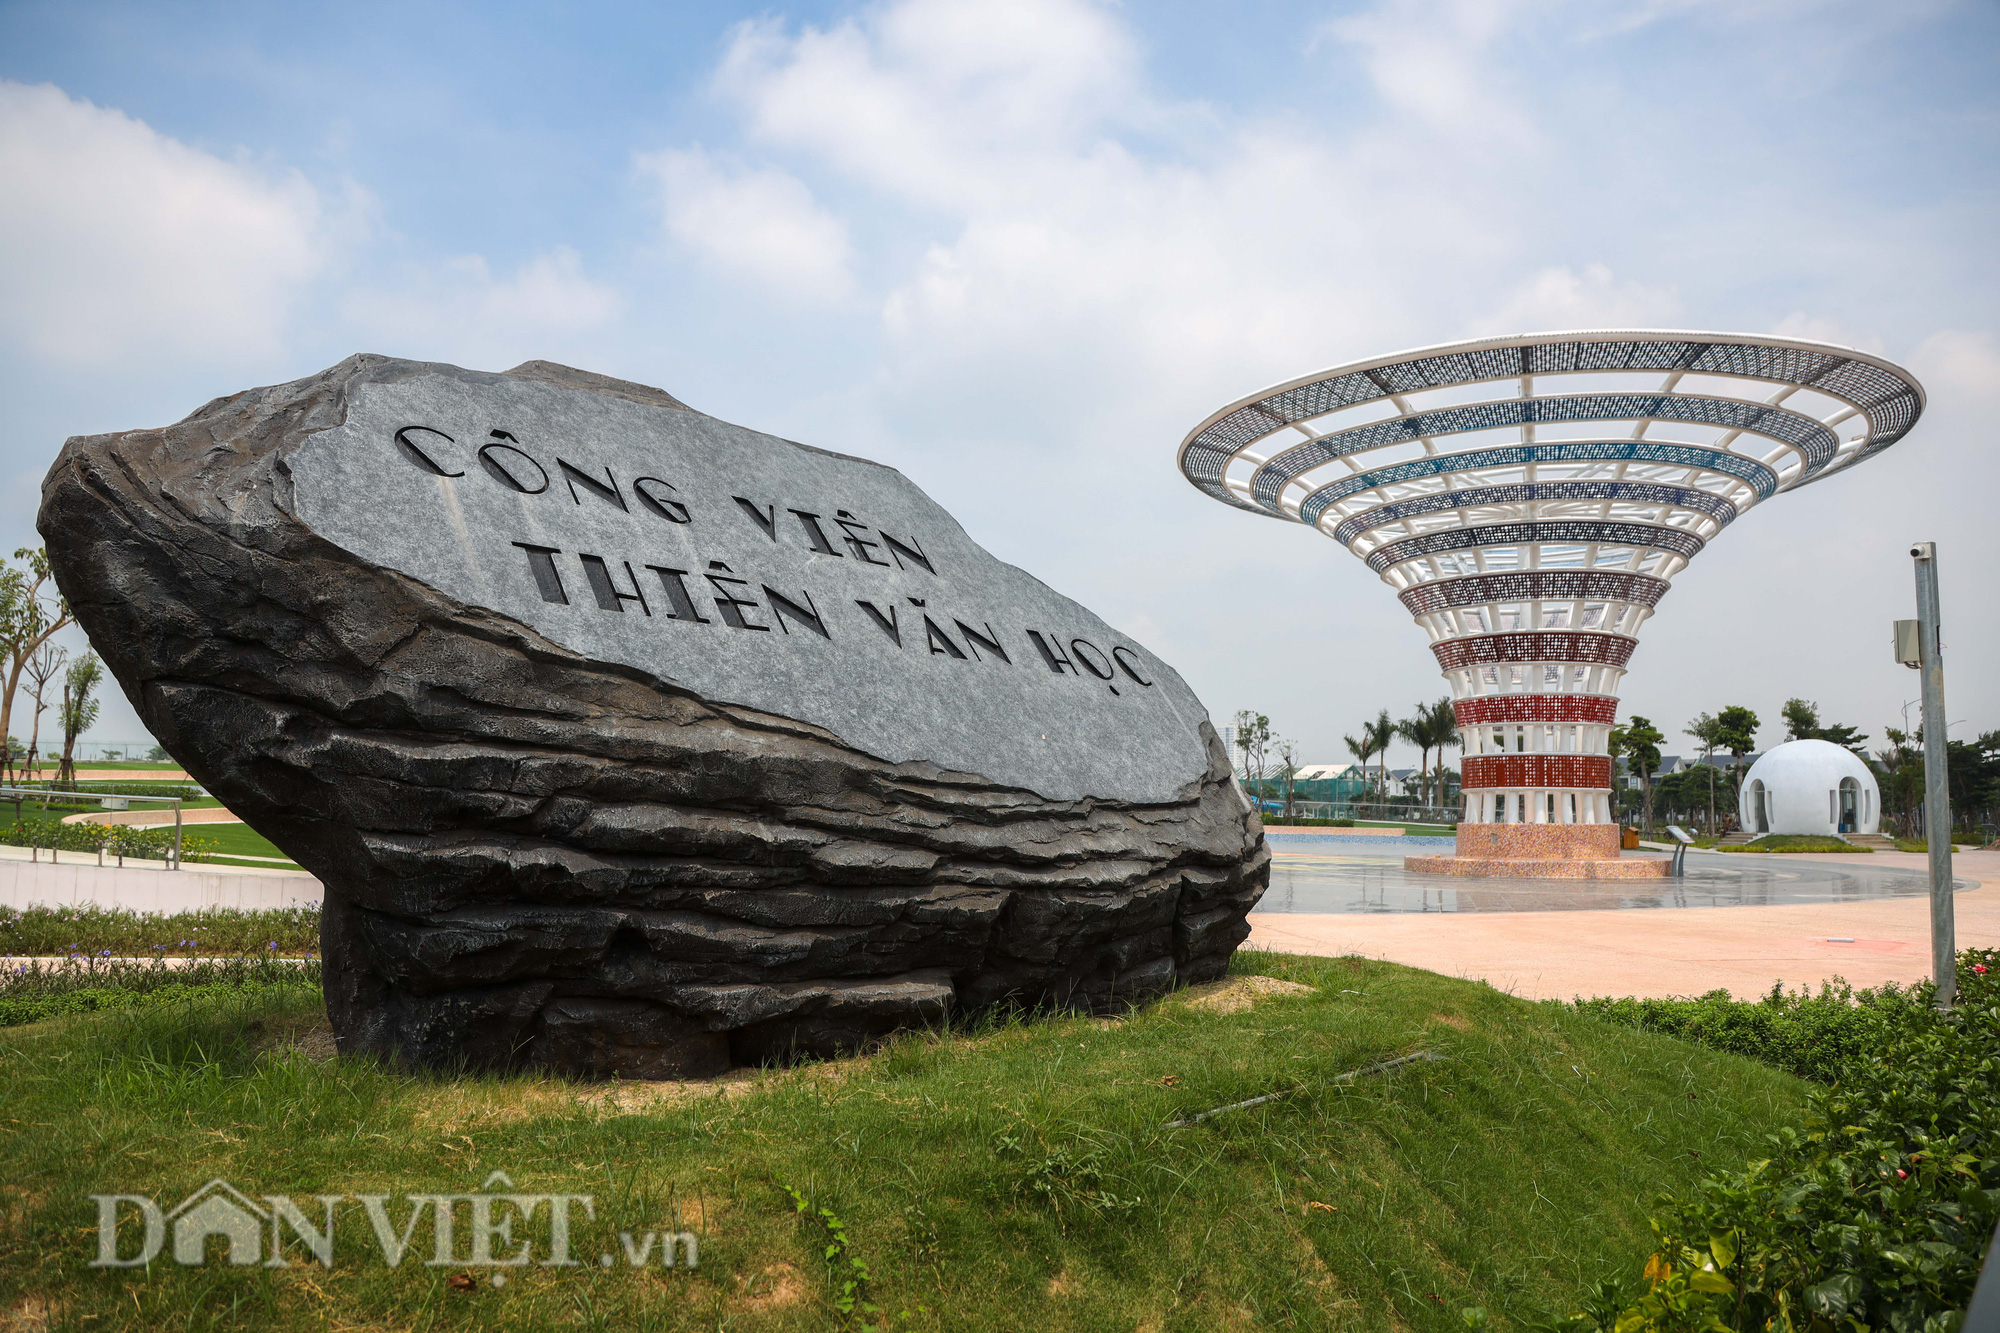 Hà Nội: Công viên Thiên văn học 260 tỷ đồng xây dựng sai quy hoạch có được &quot;hợp thức hóa&quot;? - Ảnh 3.